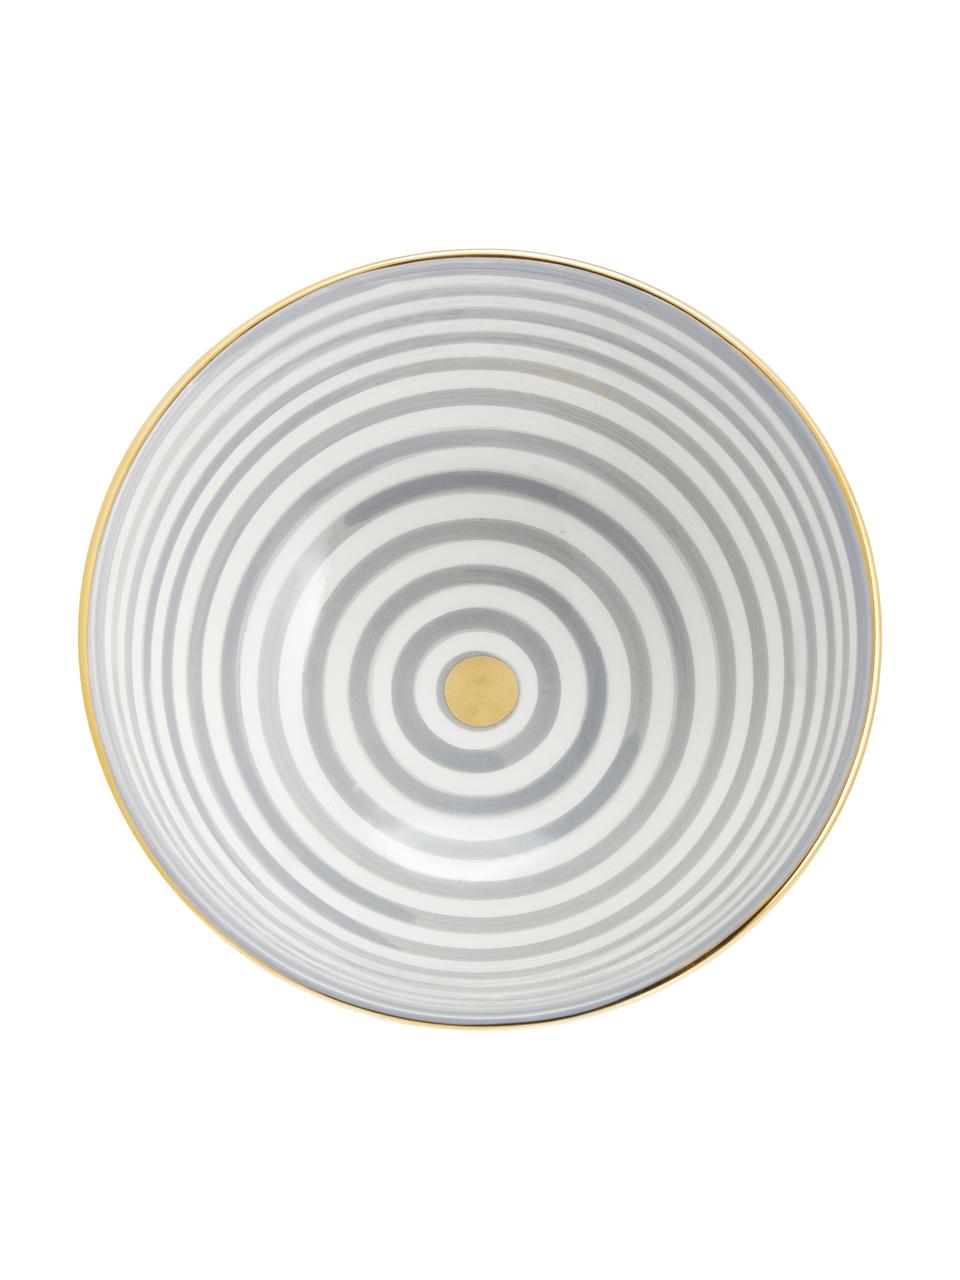 Saladier céramique marocaine artisanale Couleur, Ø 25 cm, Gris clair, couleur crème, or